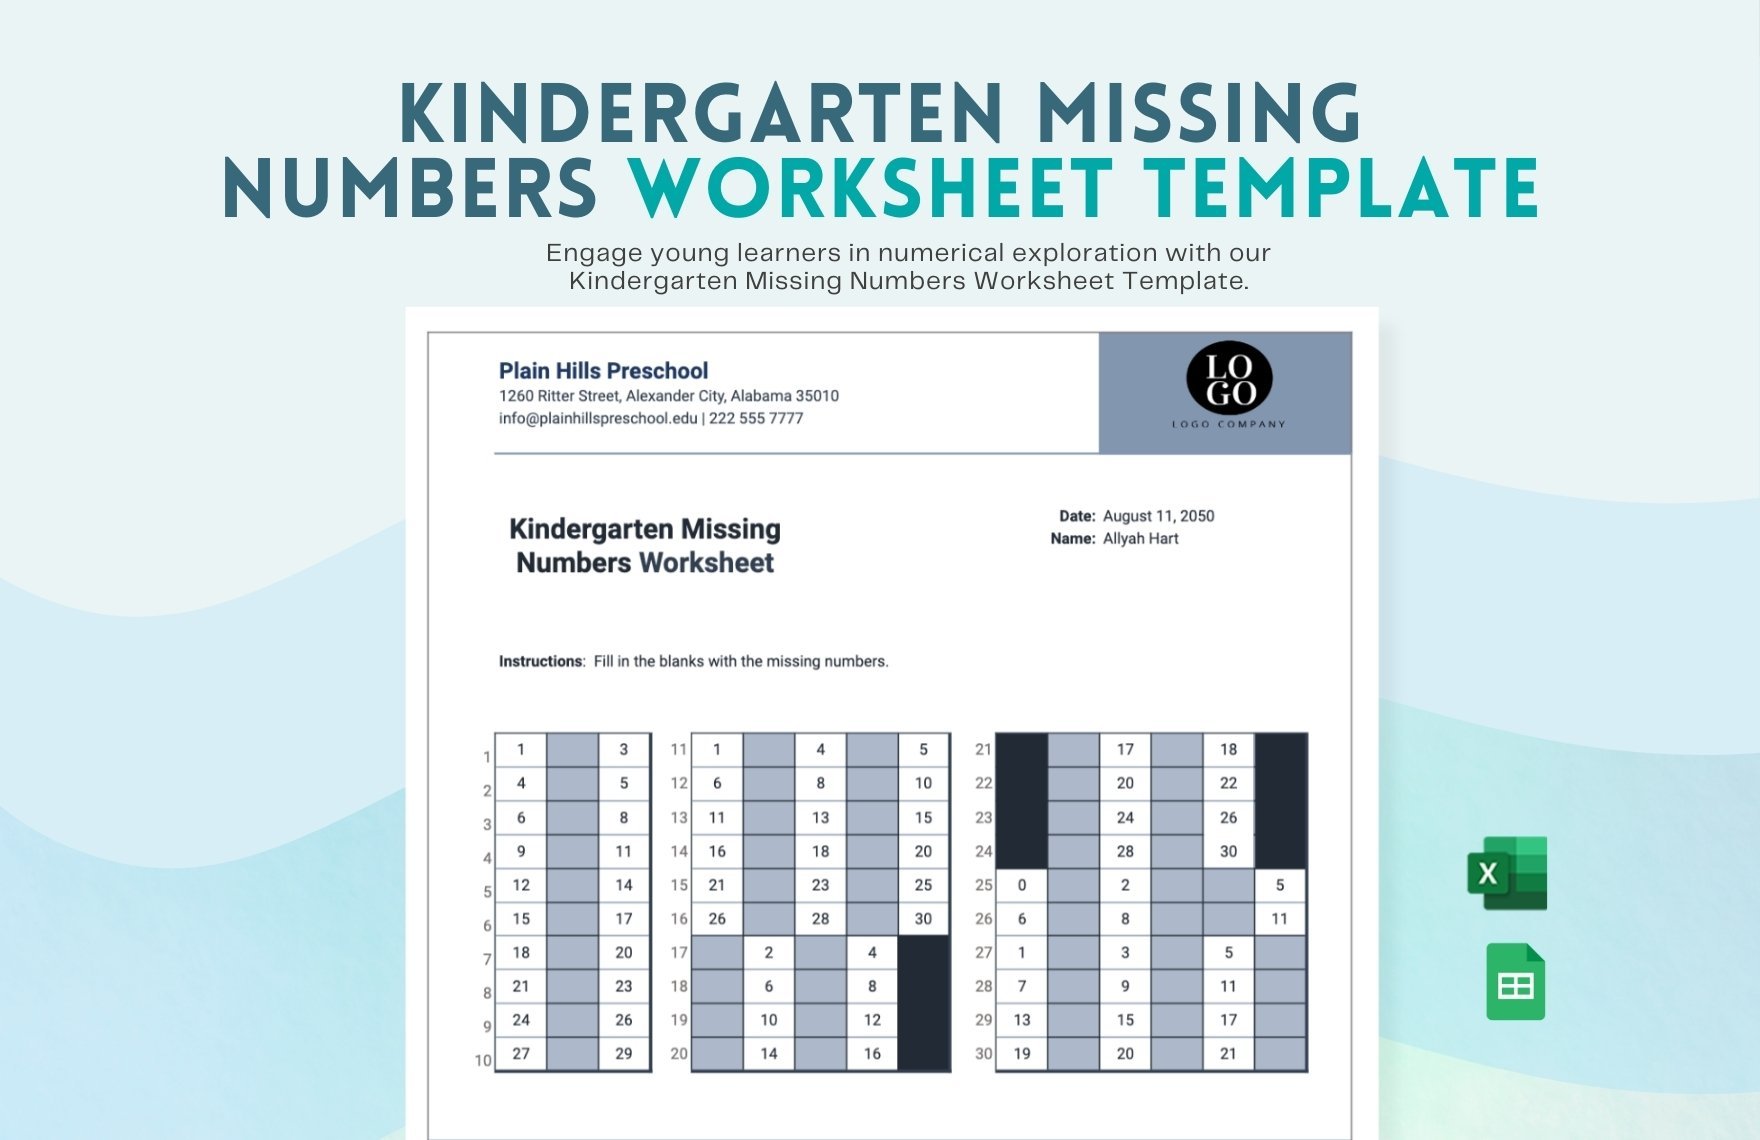 Kindergarten Missing Numbers Worksheet in Excel, Google Sheets